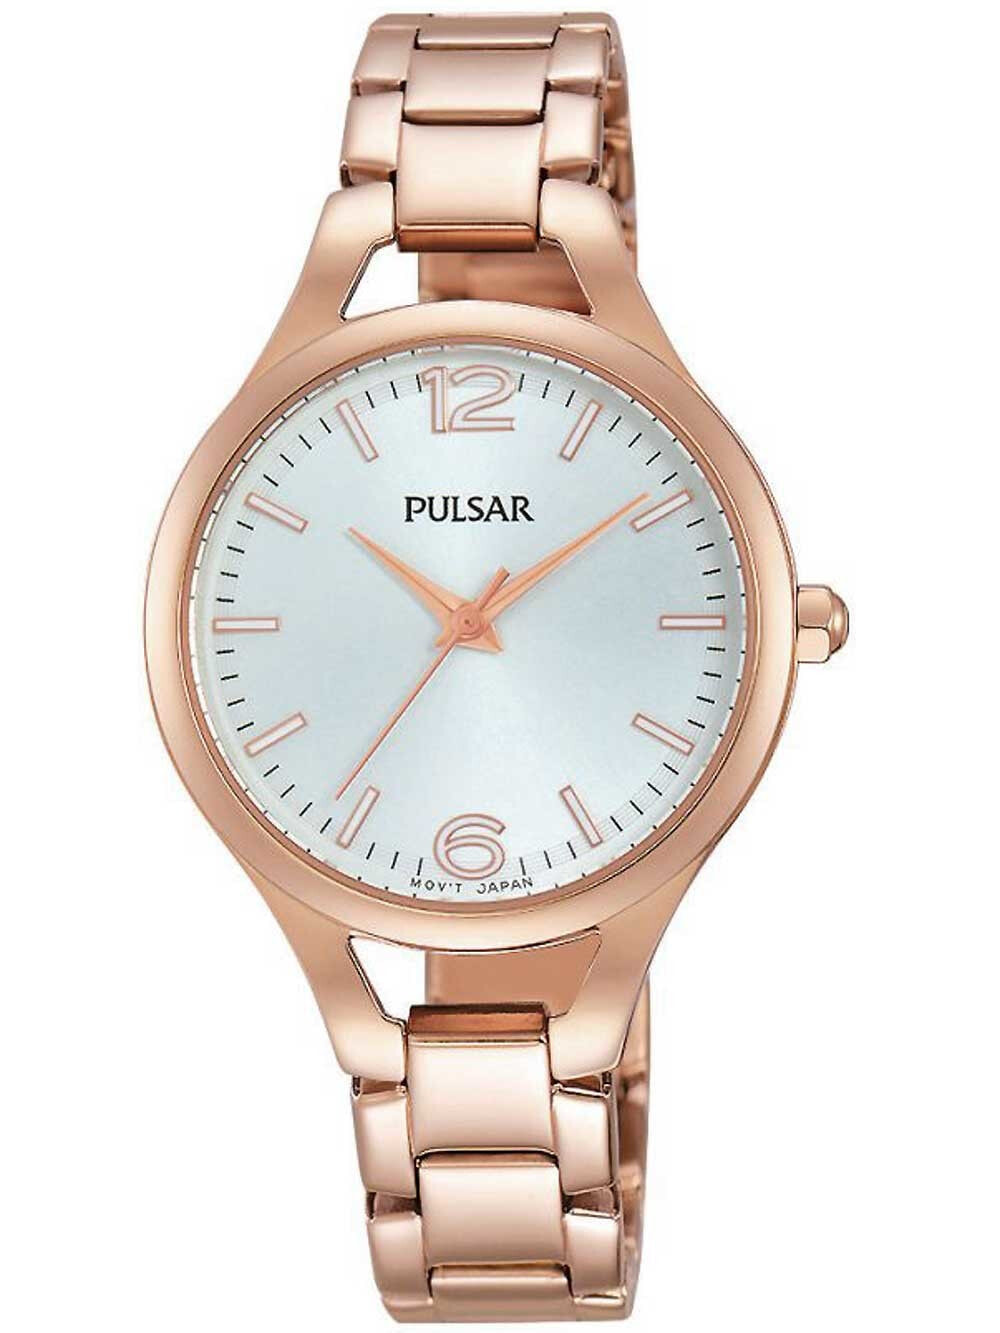 Женские наручные кварцевые часы Pulsar ремешок из нержавеющей стали. Водонепроницаемость-3 АТМ. Закаленное минеральное стекло, защищающее от царапин.